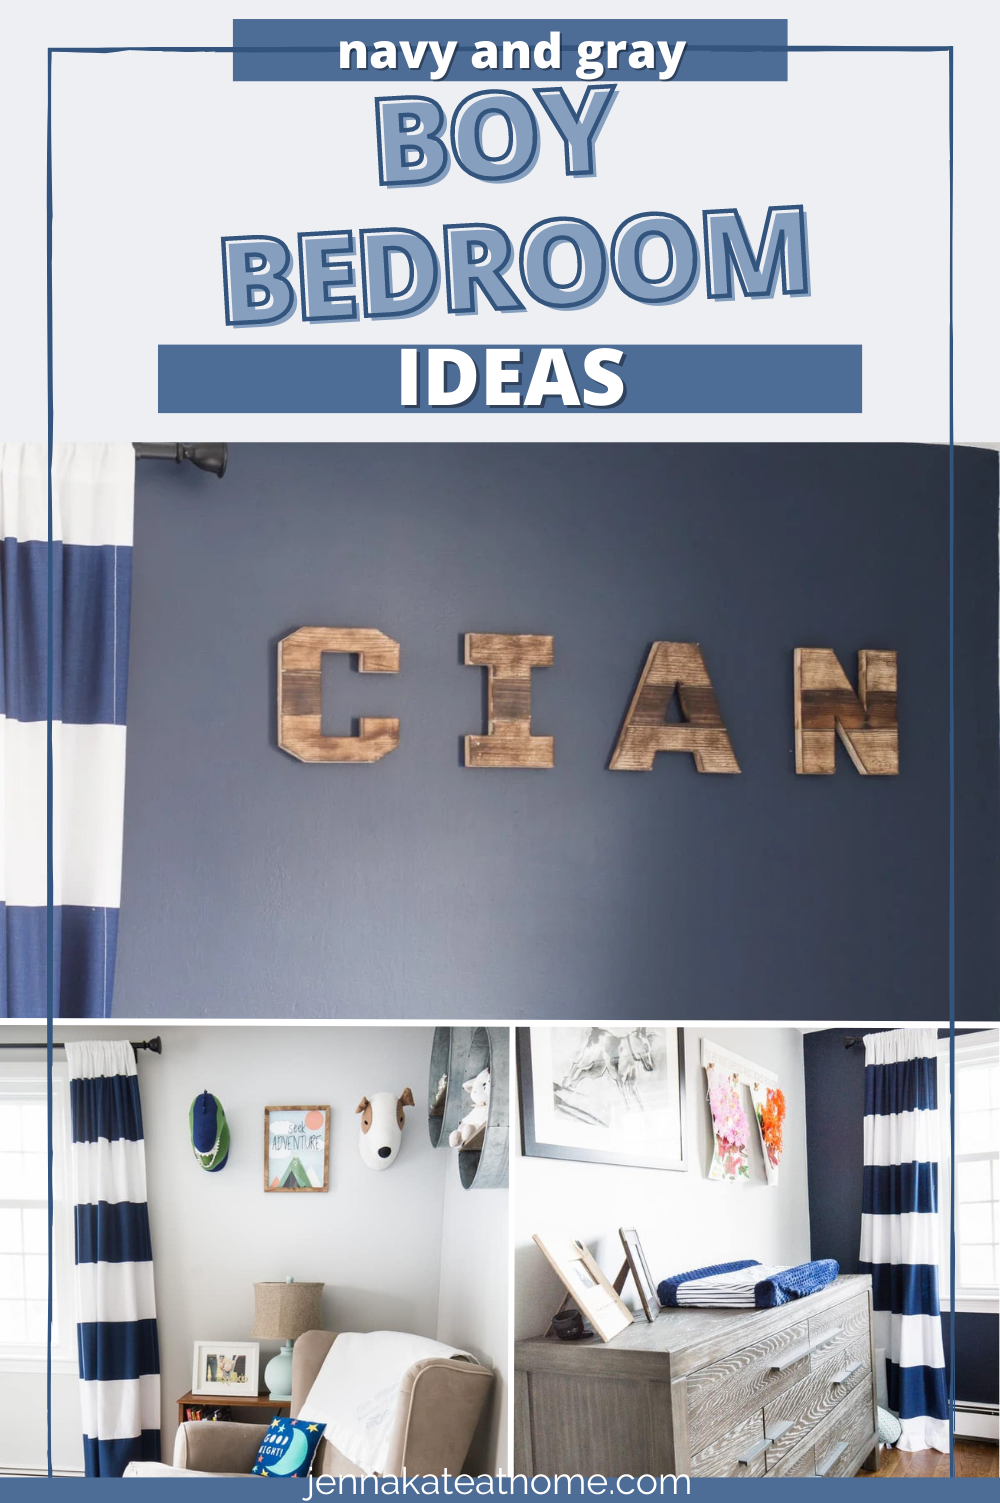 Navy and gray boy bedroom ideas